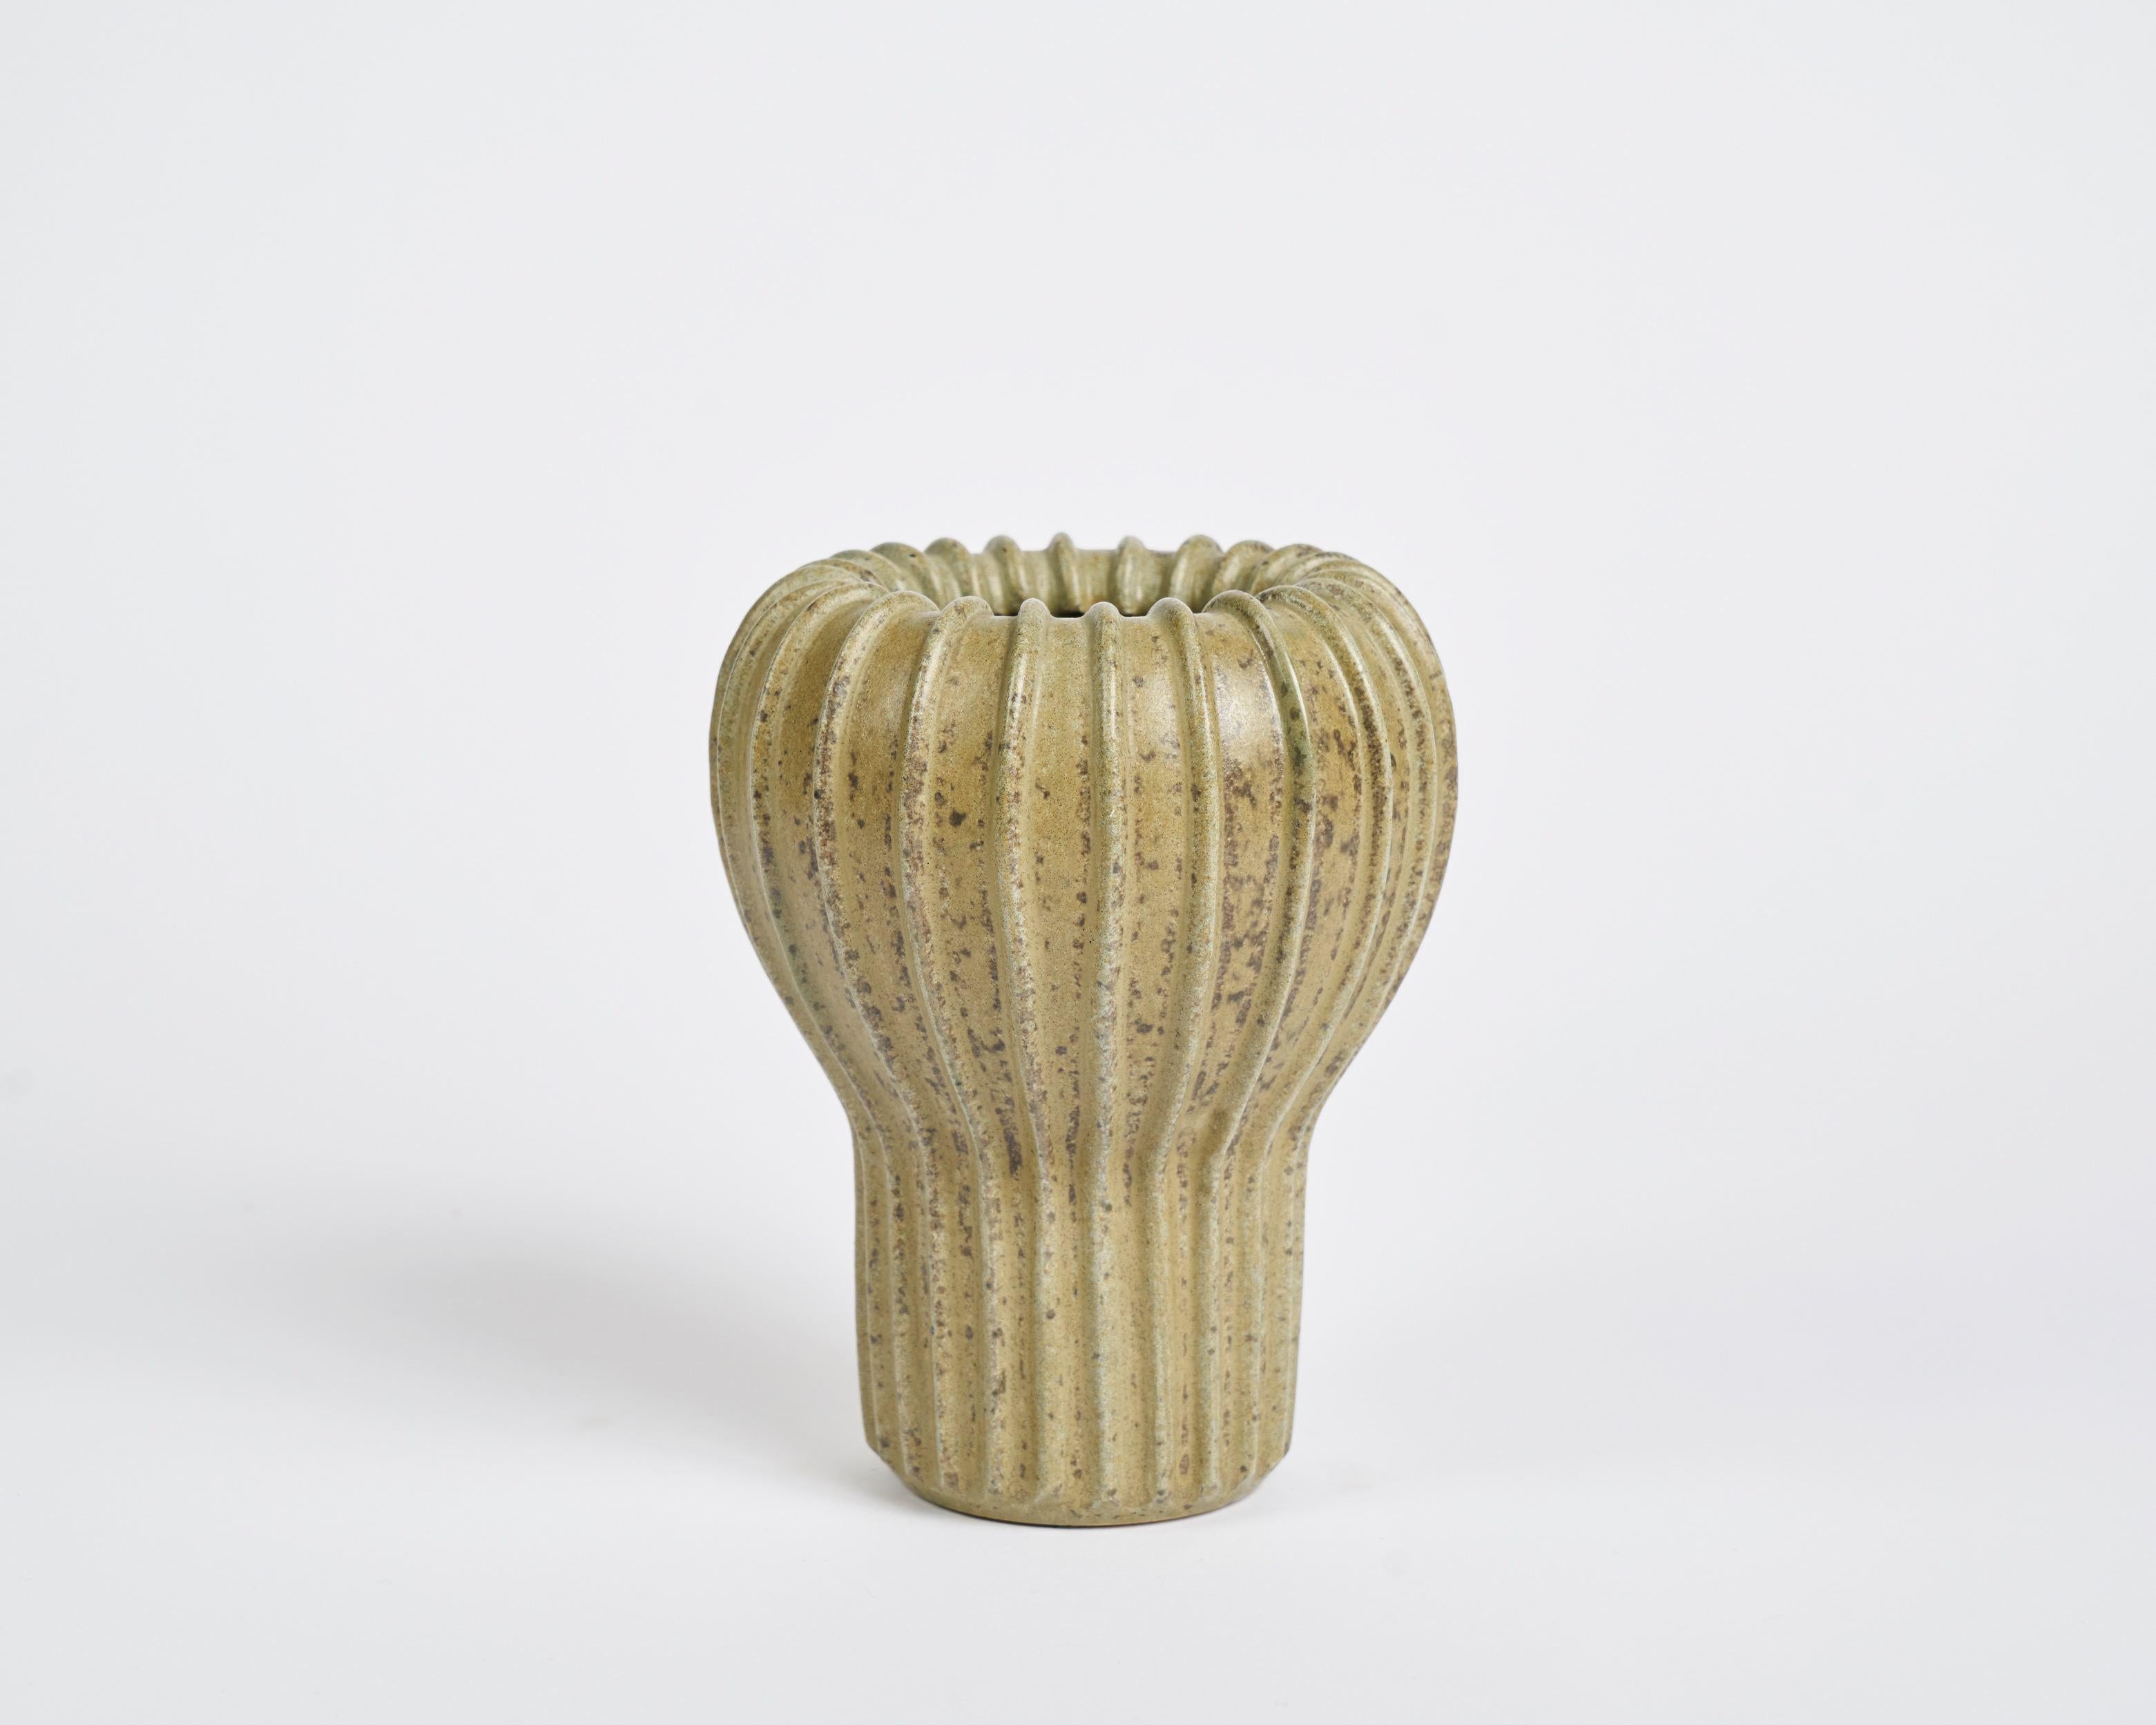 Ribbed ceramic vase Arne Bang.

Signed: AB
Numbered: 139.